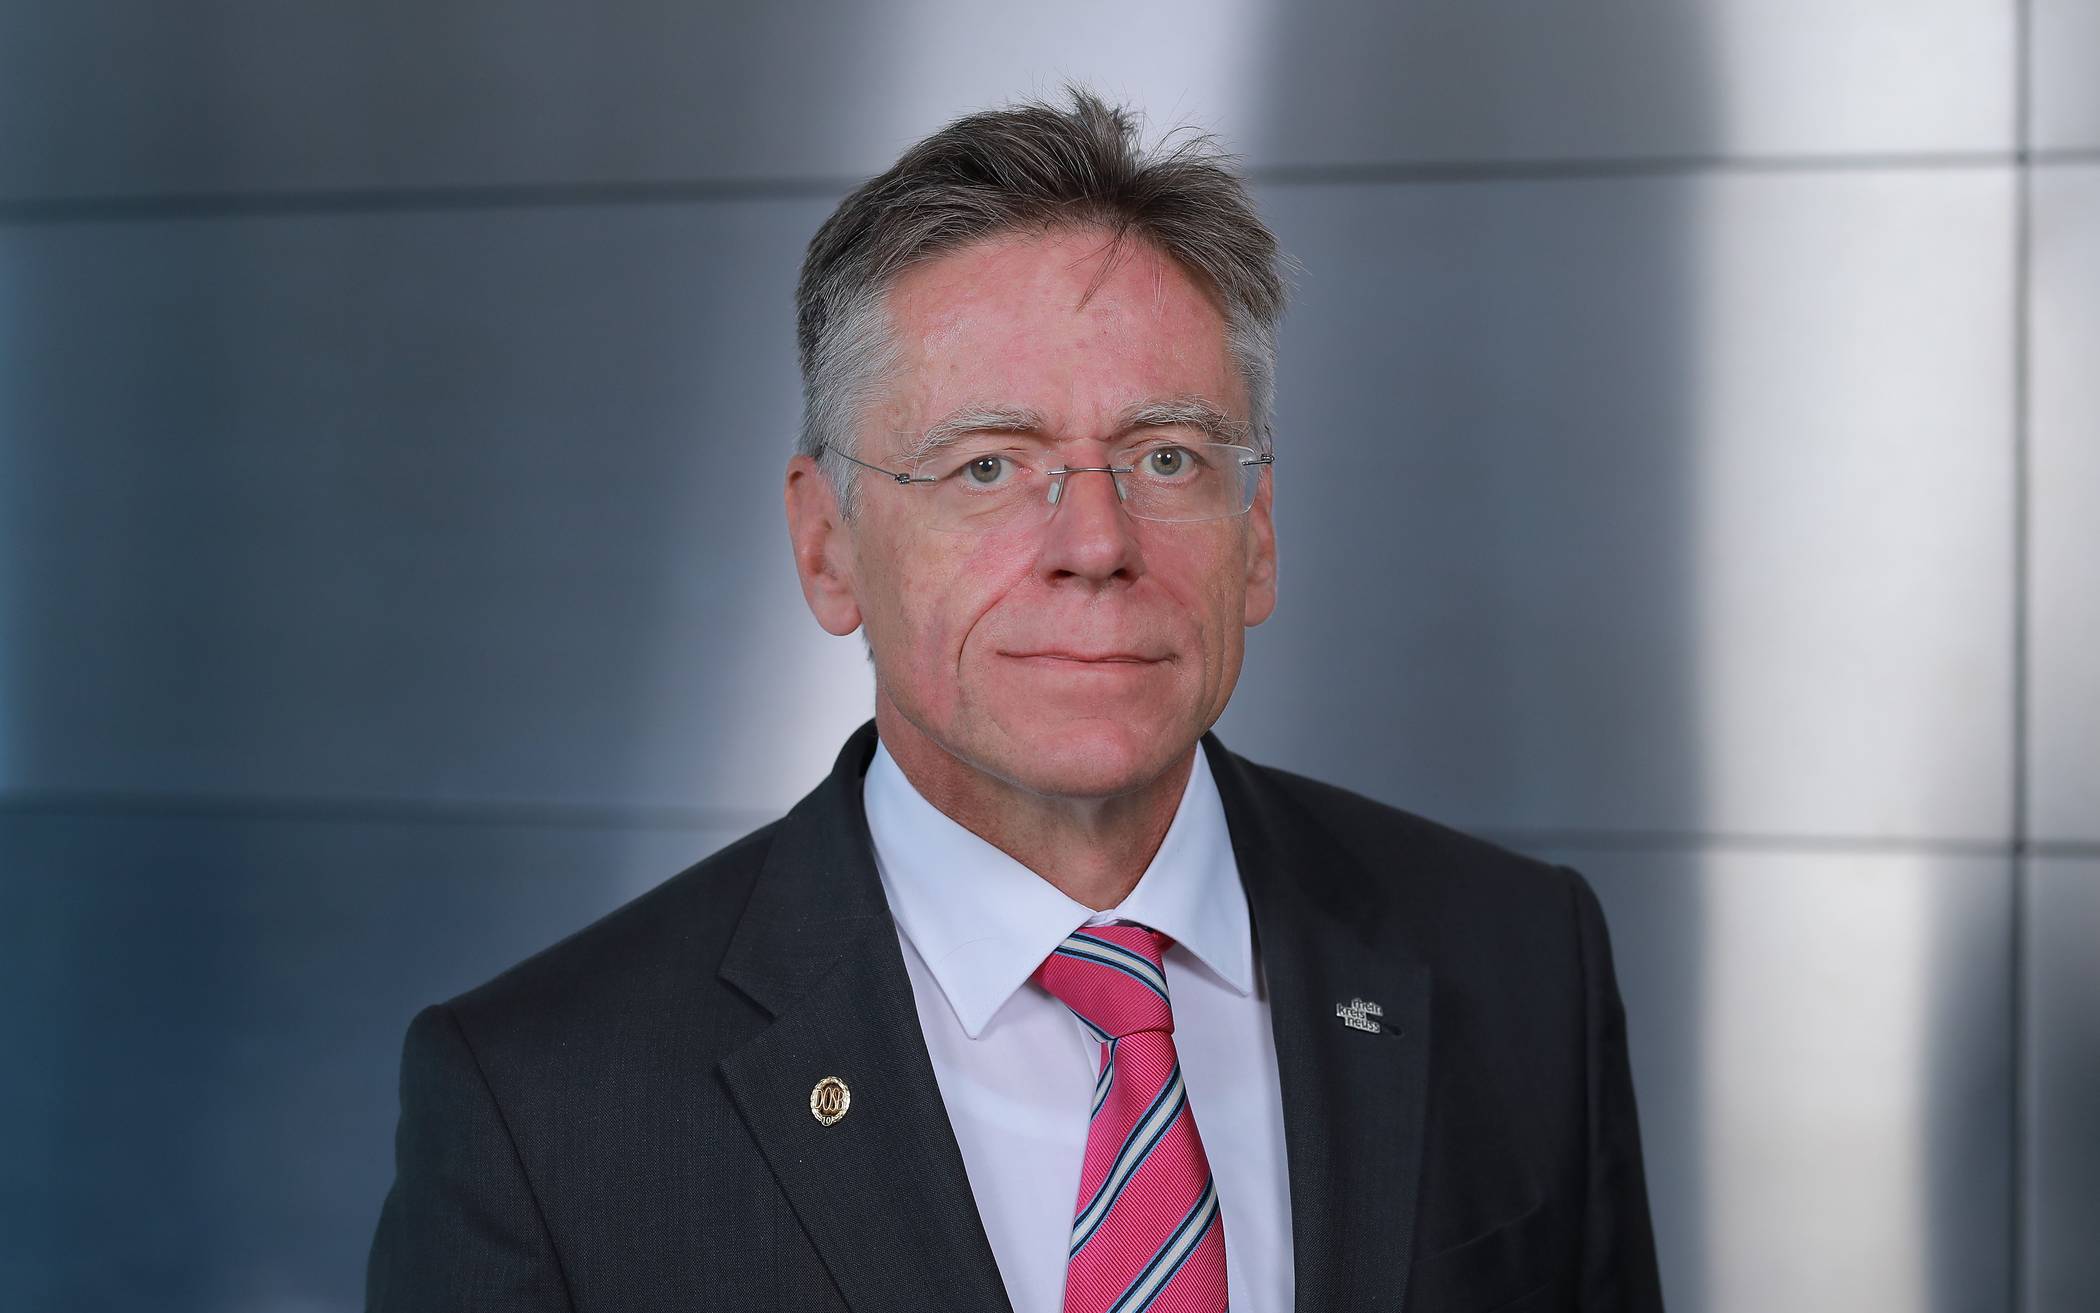   Landrat Hans-Jürgen Petrauschke appelliert an die Bürgerinnen und Bürger, alle Corona-Schutzmaßnahmen gemeinsam und in Solidarität zu unterstützen.  